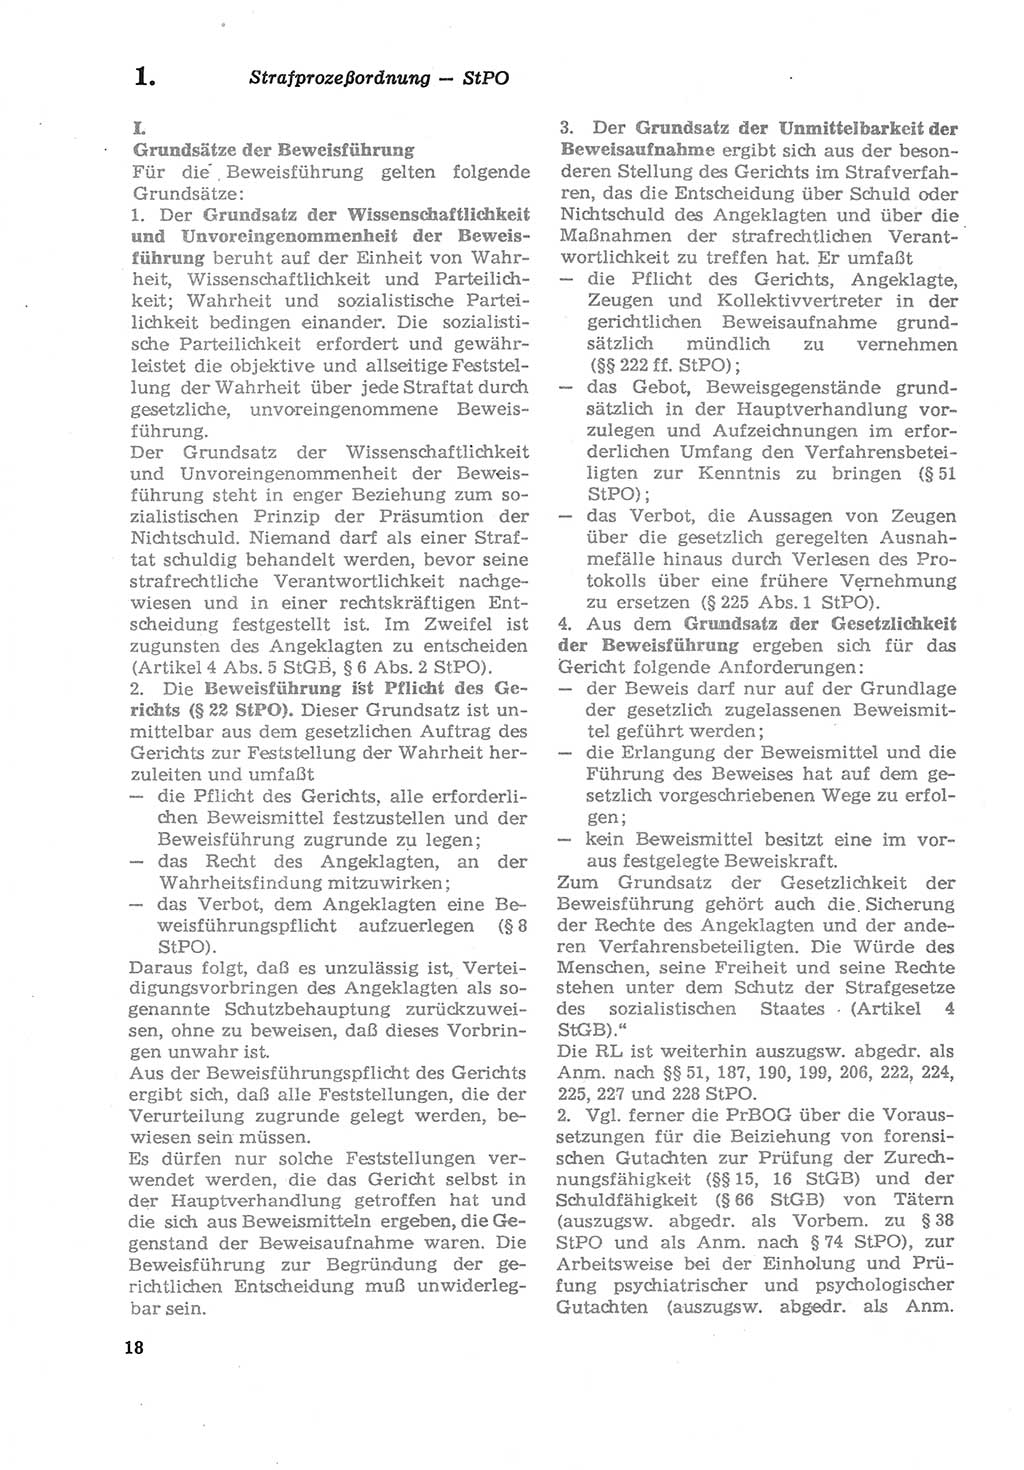 Strafprozeßordnung (StPO) der Deutschen Demokratischen Republik (DDR) sowie angrenzende Gesetze und Bestimmungen 1979, Seite 18 (StPO DDR Ges. Best. 1979, S. 18)